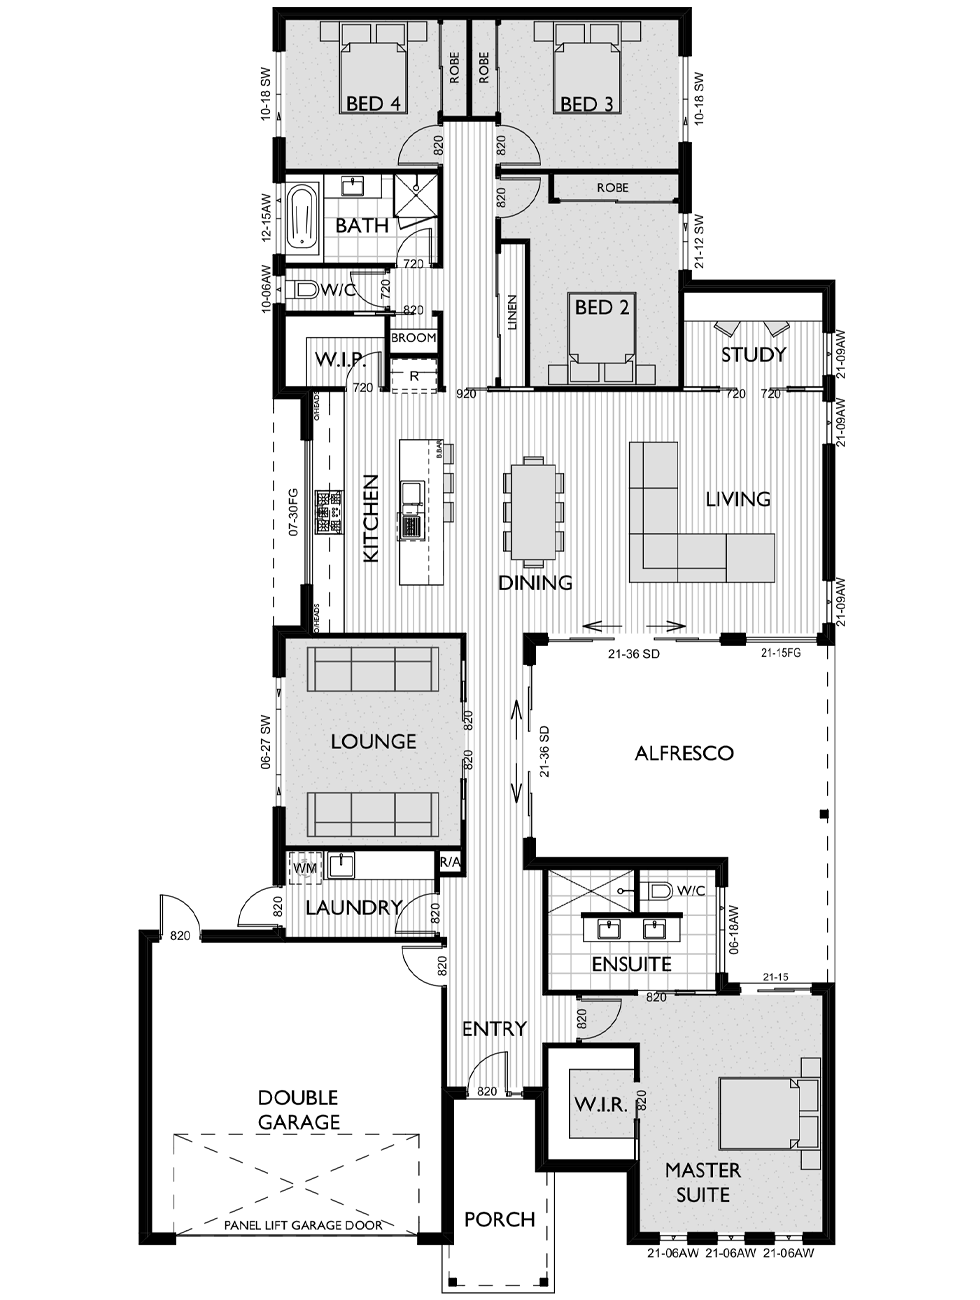 Floor Plan for Virtue Homes Belmain 32 family home